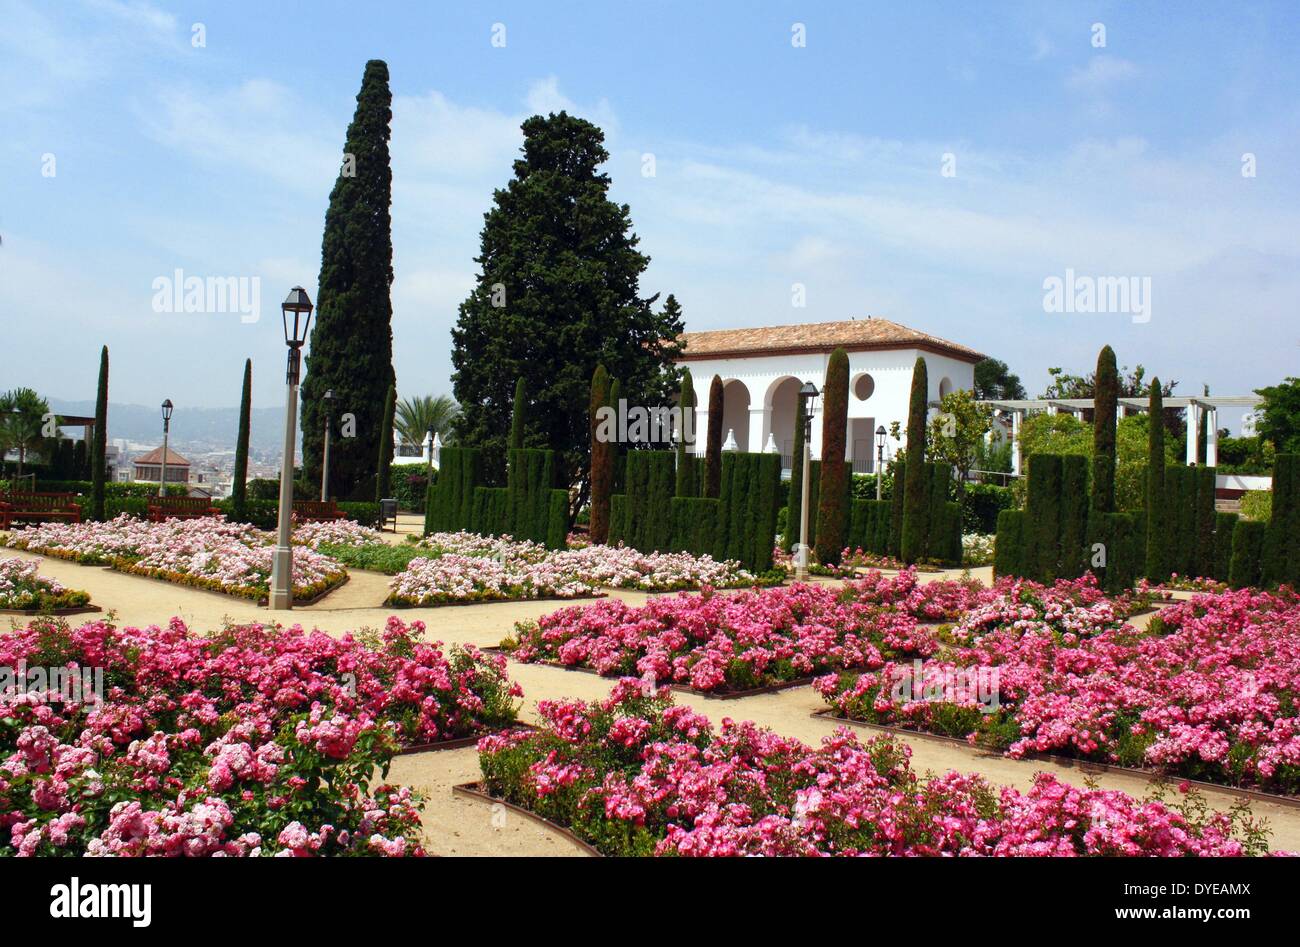 Le parc de Montjuïc est situé dans le quartier de Sants. et elle occupe une grande partie de collines, des espaces verts et jardins, musées et attractions culturelles, des installations sportives et de sites olympiques. Barcelone. Espagne 2013 Banque D'Images